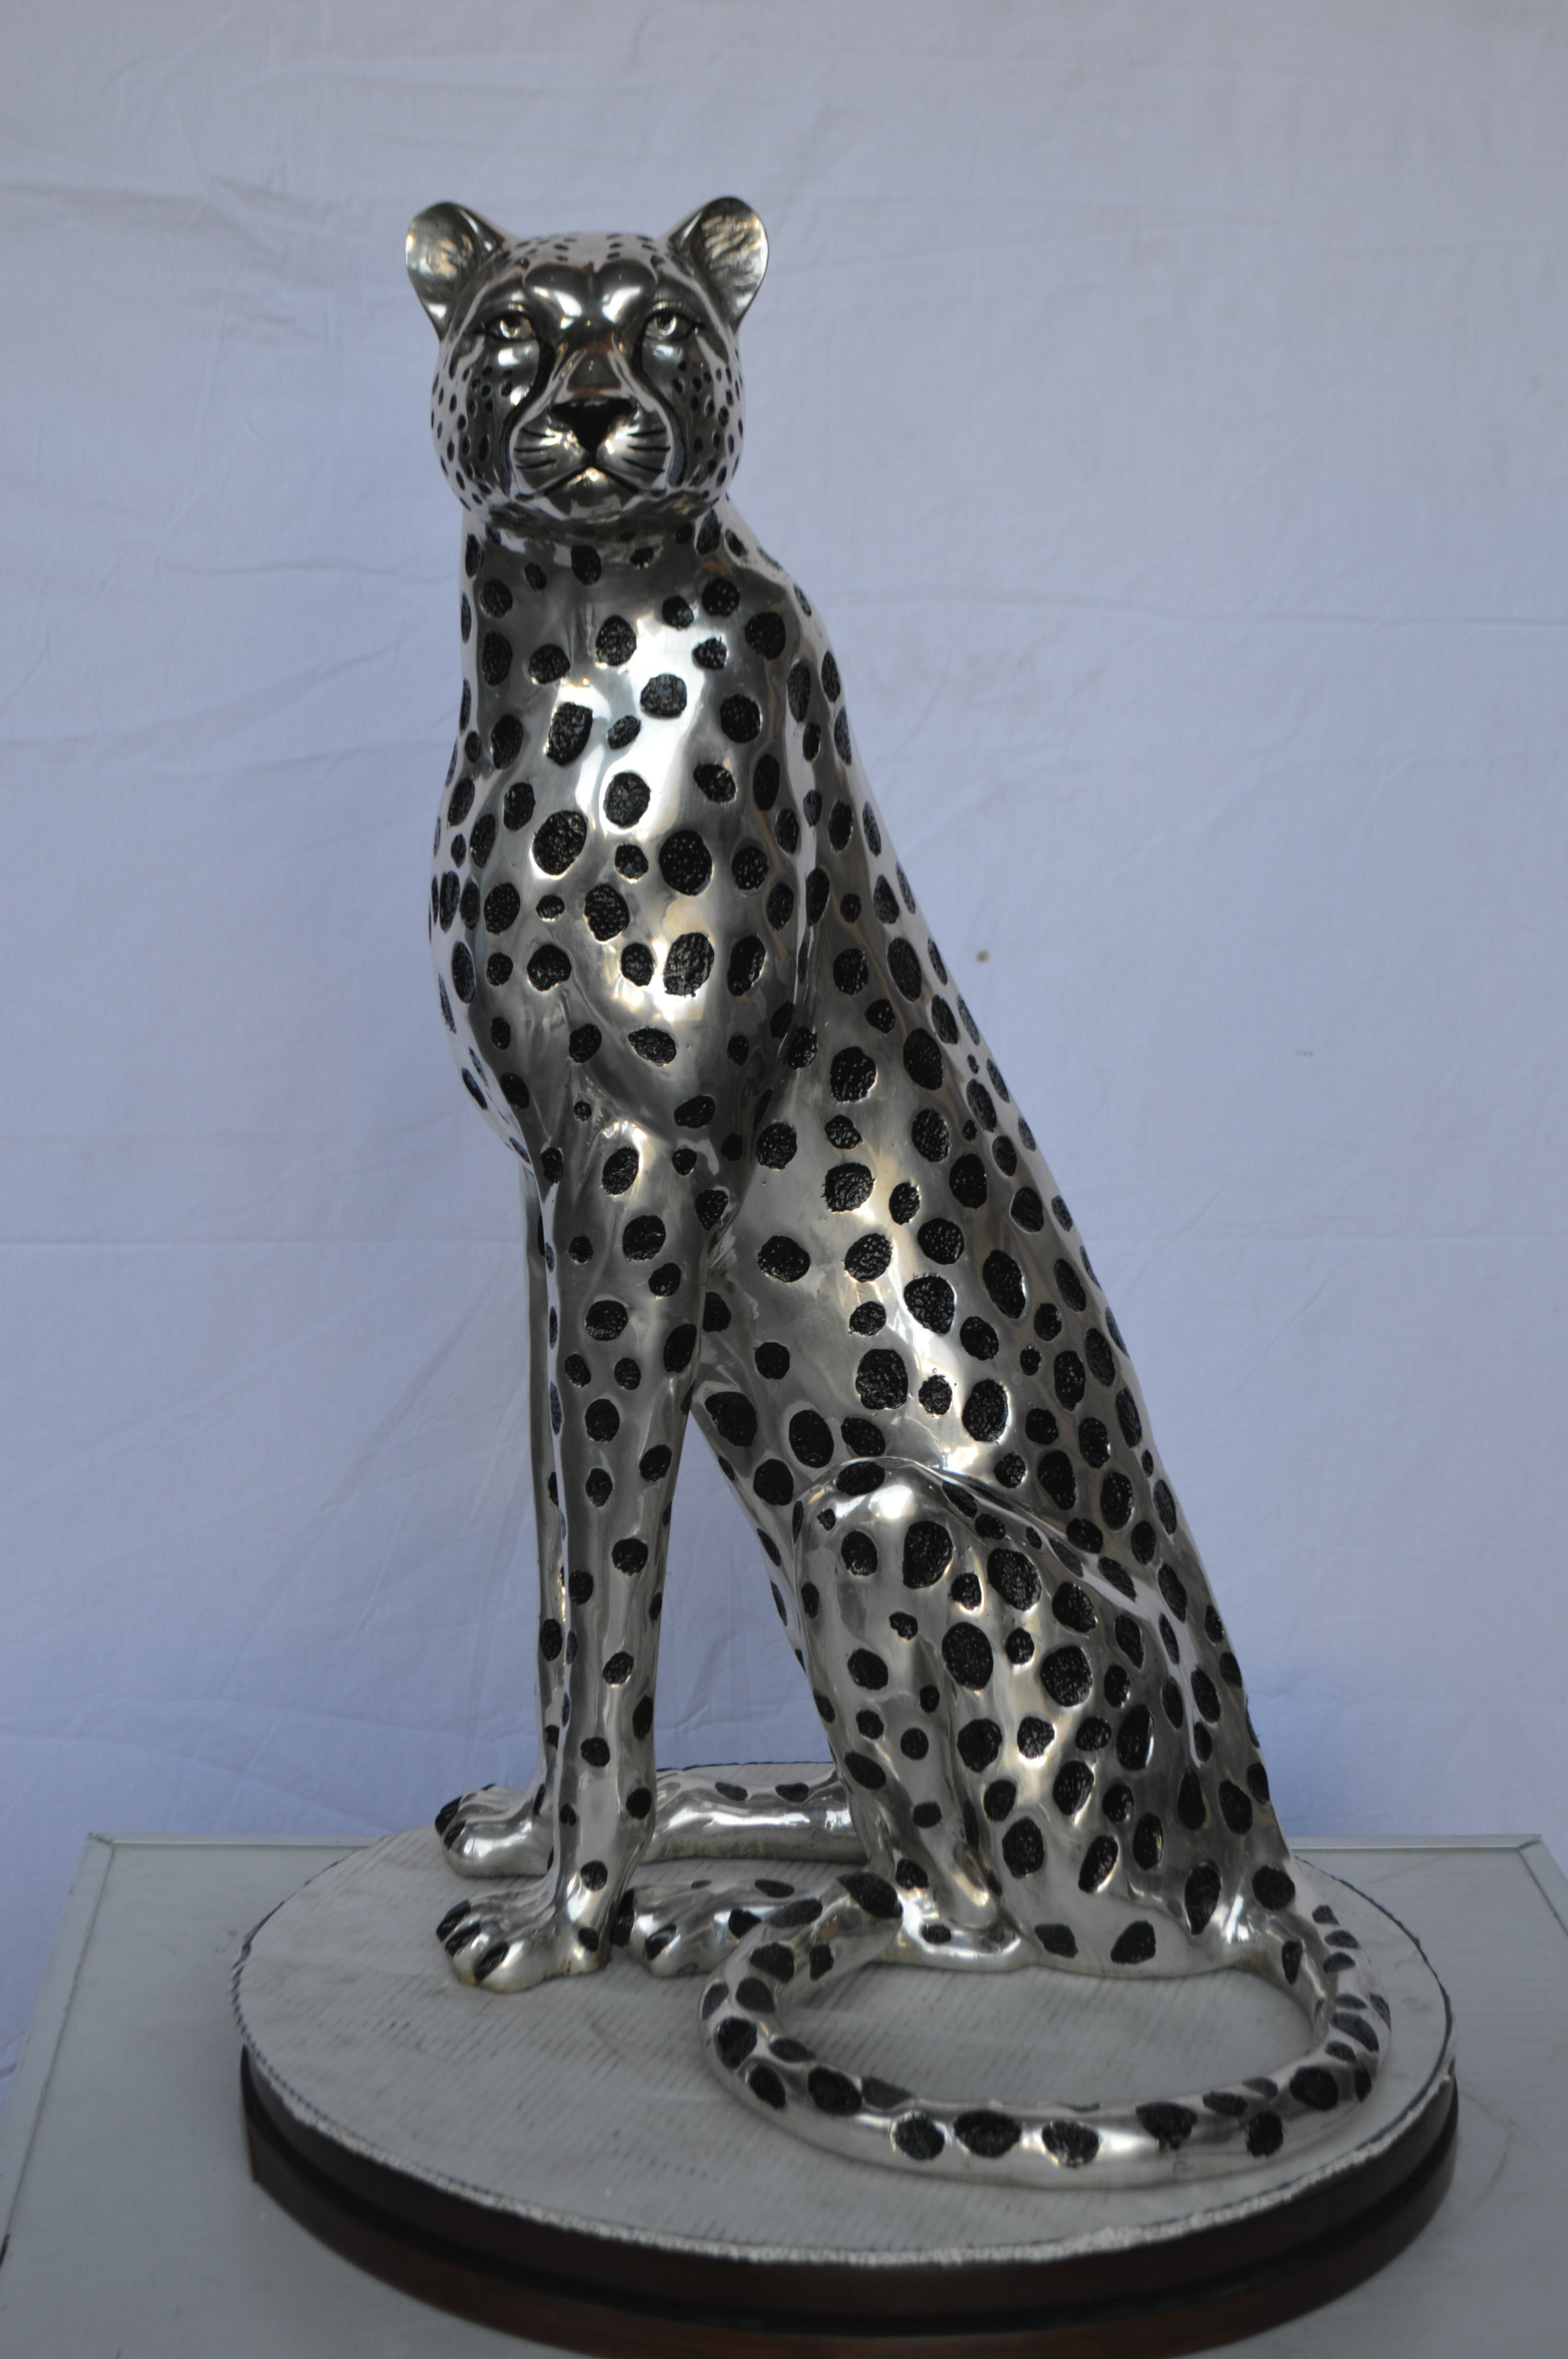 https://assets.wfcdn.com/im/96243737/compr-r85/9092/90925686/ingar-sitting-cheetah-statue.jpg